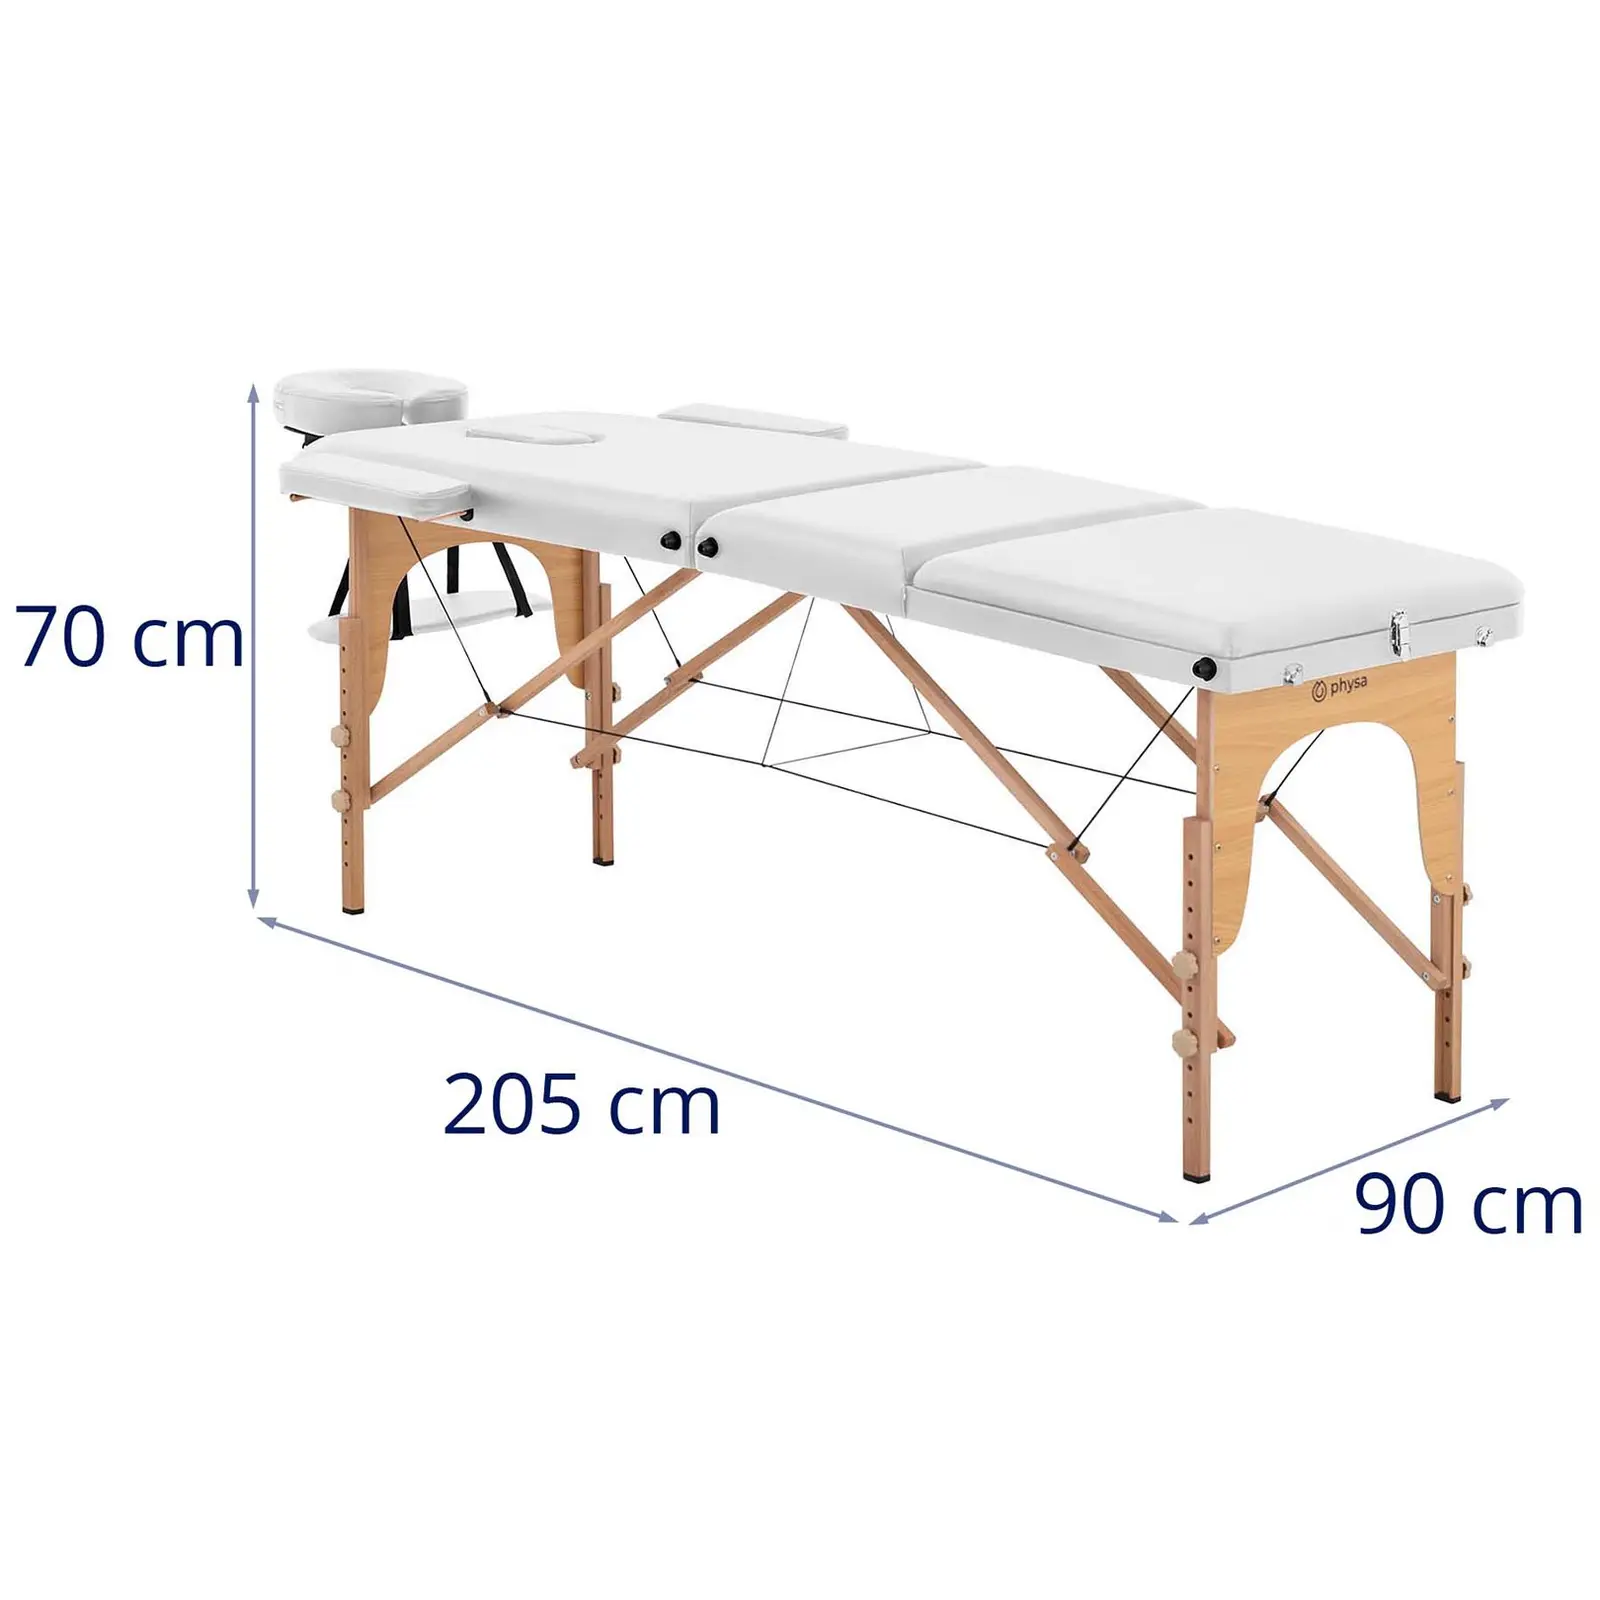 Table de massage pliante - extra large (70 cm) - repose-pieds inclinable - bois de hêtre - blanc - 6